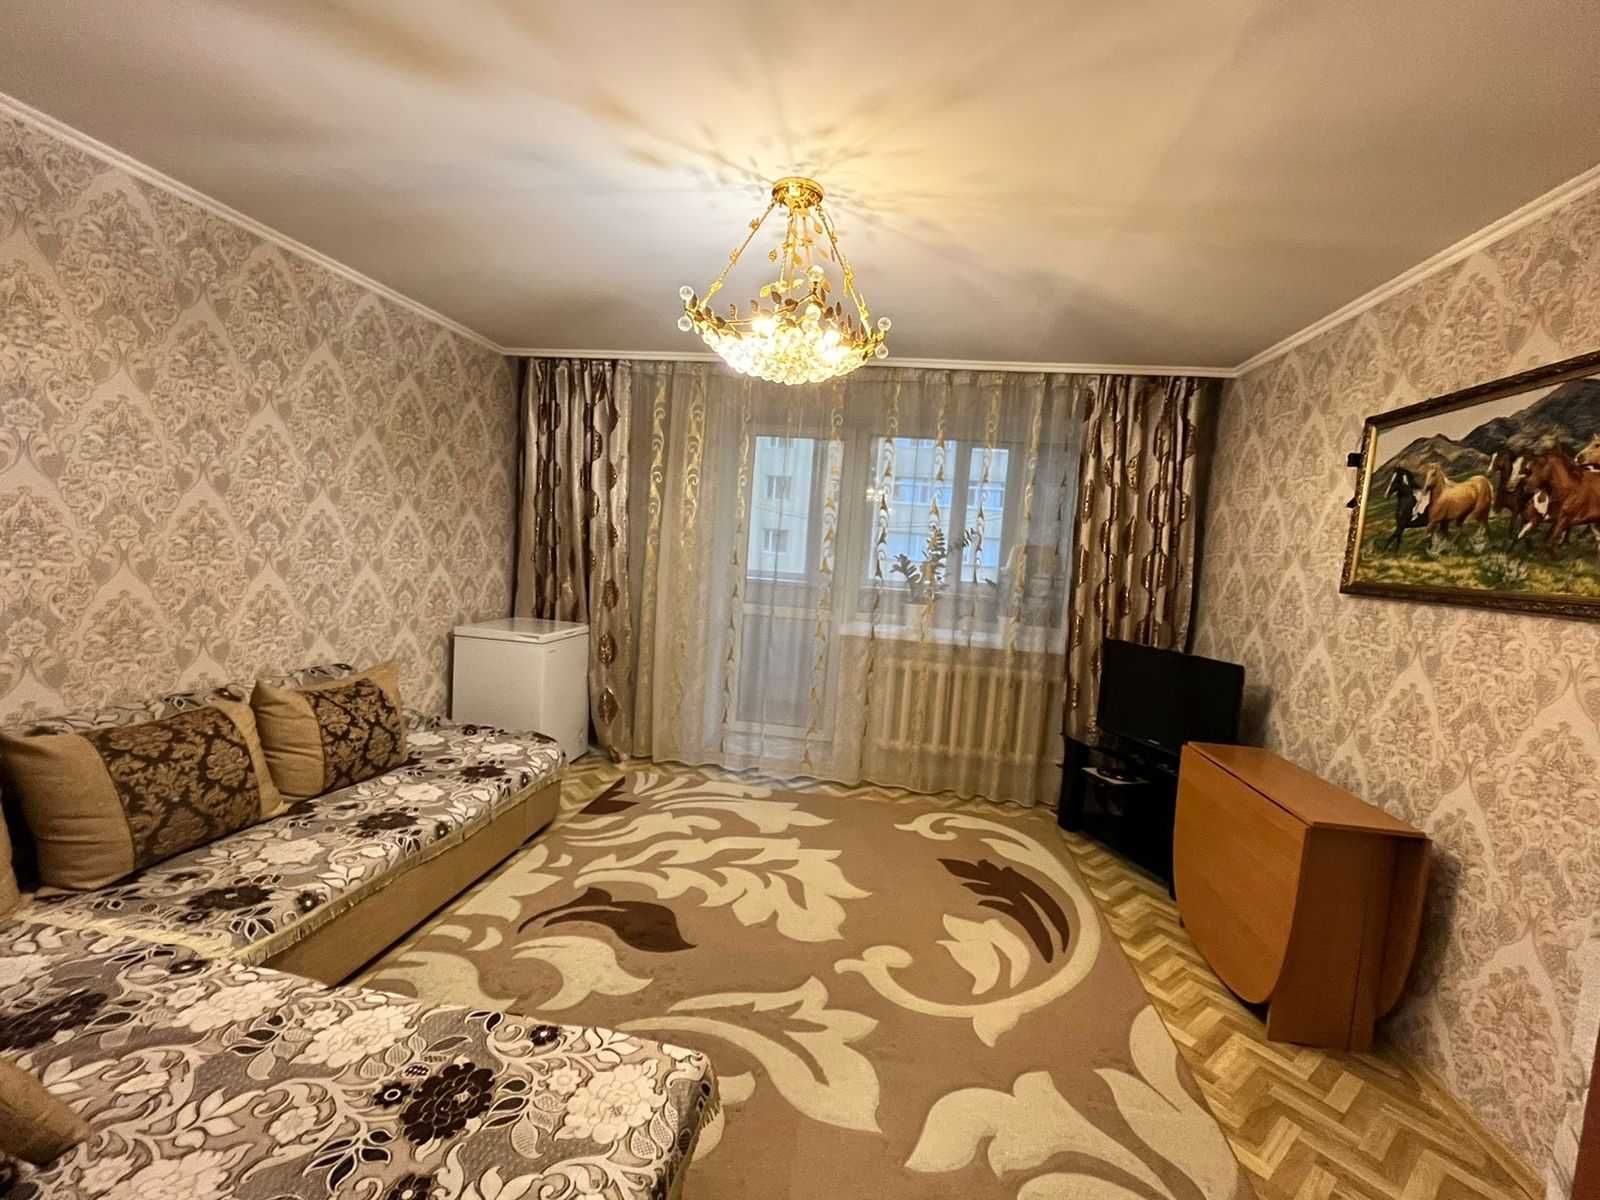 Продается 2-х комн. квартира в новостройке по ул. Ермекова